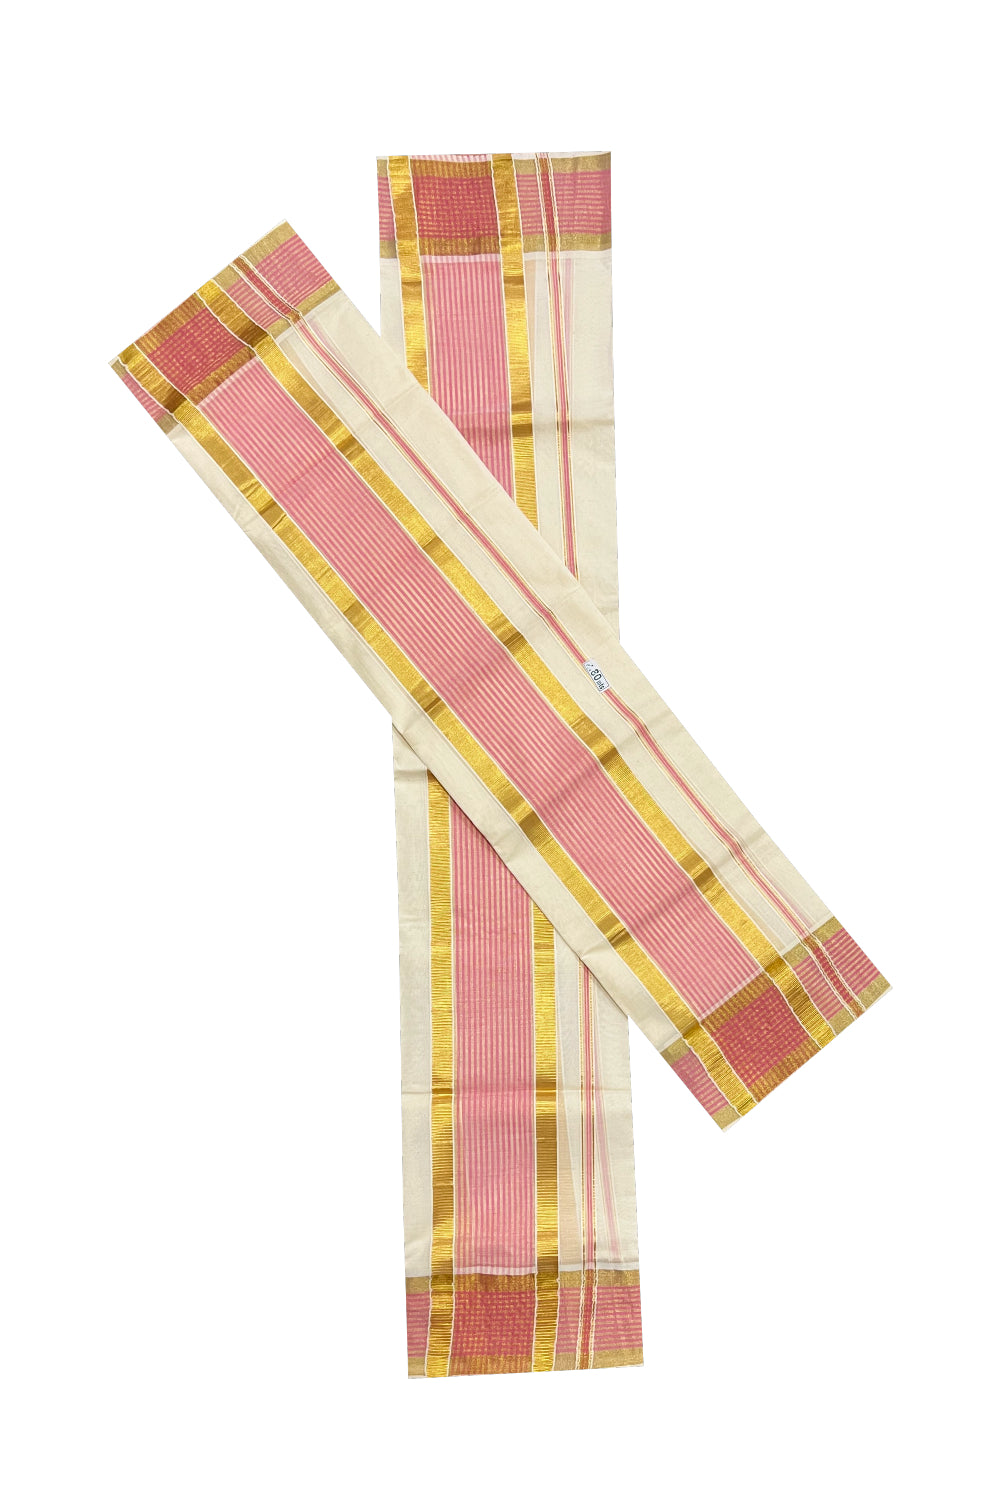 Kerala Cotton Single Set Mundu (Mundum Neriyathum) with Pink Lines and Kasavu Border